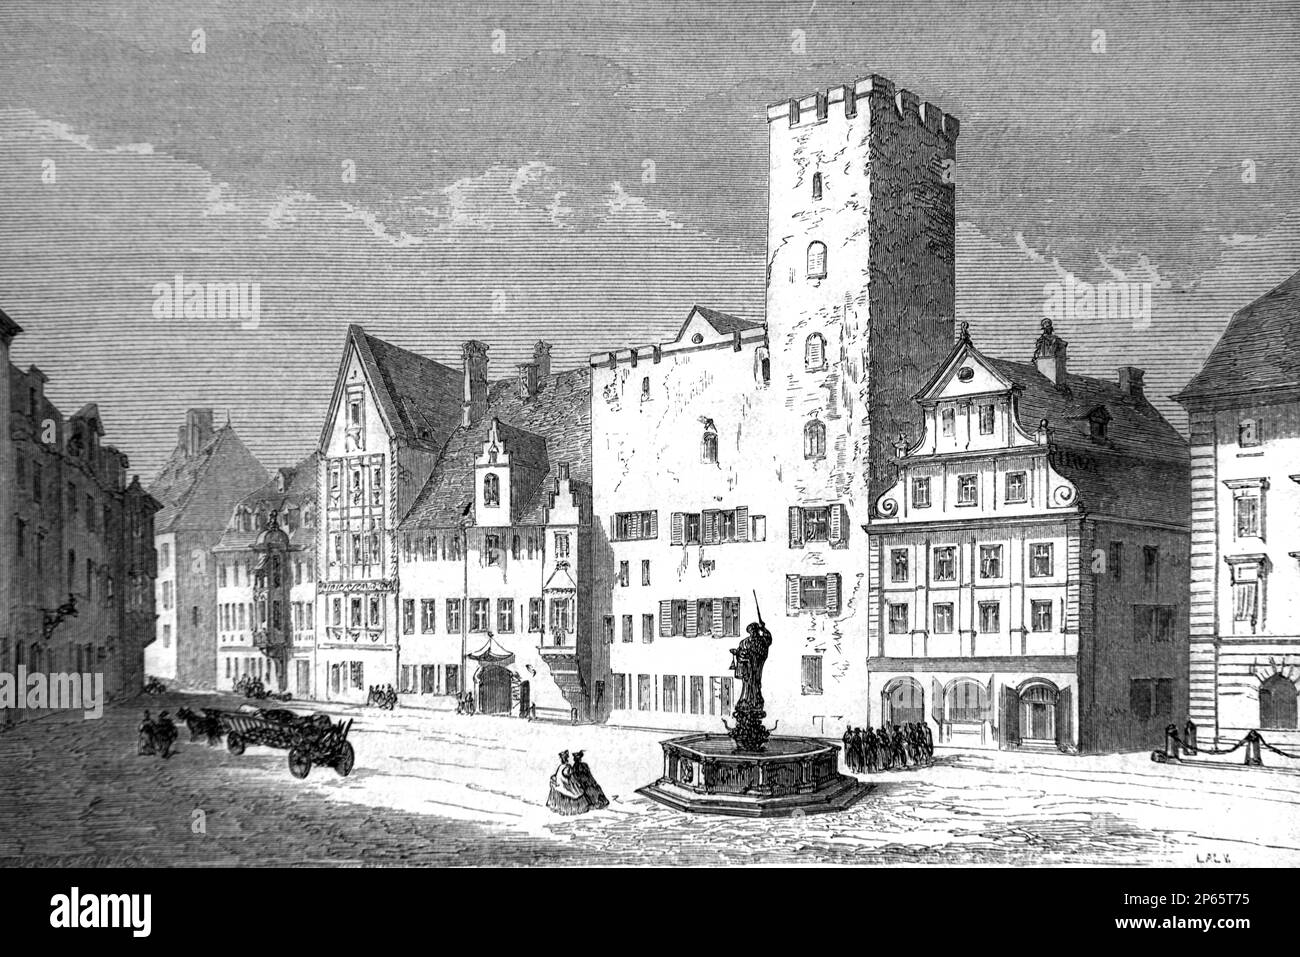 Mittelalterliches Turmhaus oder Handelsturm, auch bekannt als Barbera Blumberg Turmhaus, in der Altstadt oder im historischen Bezirk Regensburg Bayern Deutschland. Vintage-Gravur oder Abbildung 1862 Stockfoto